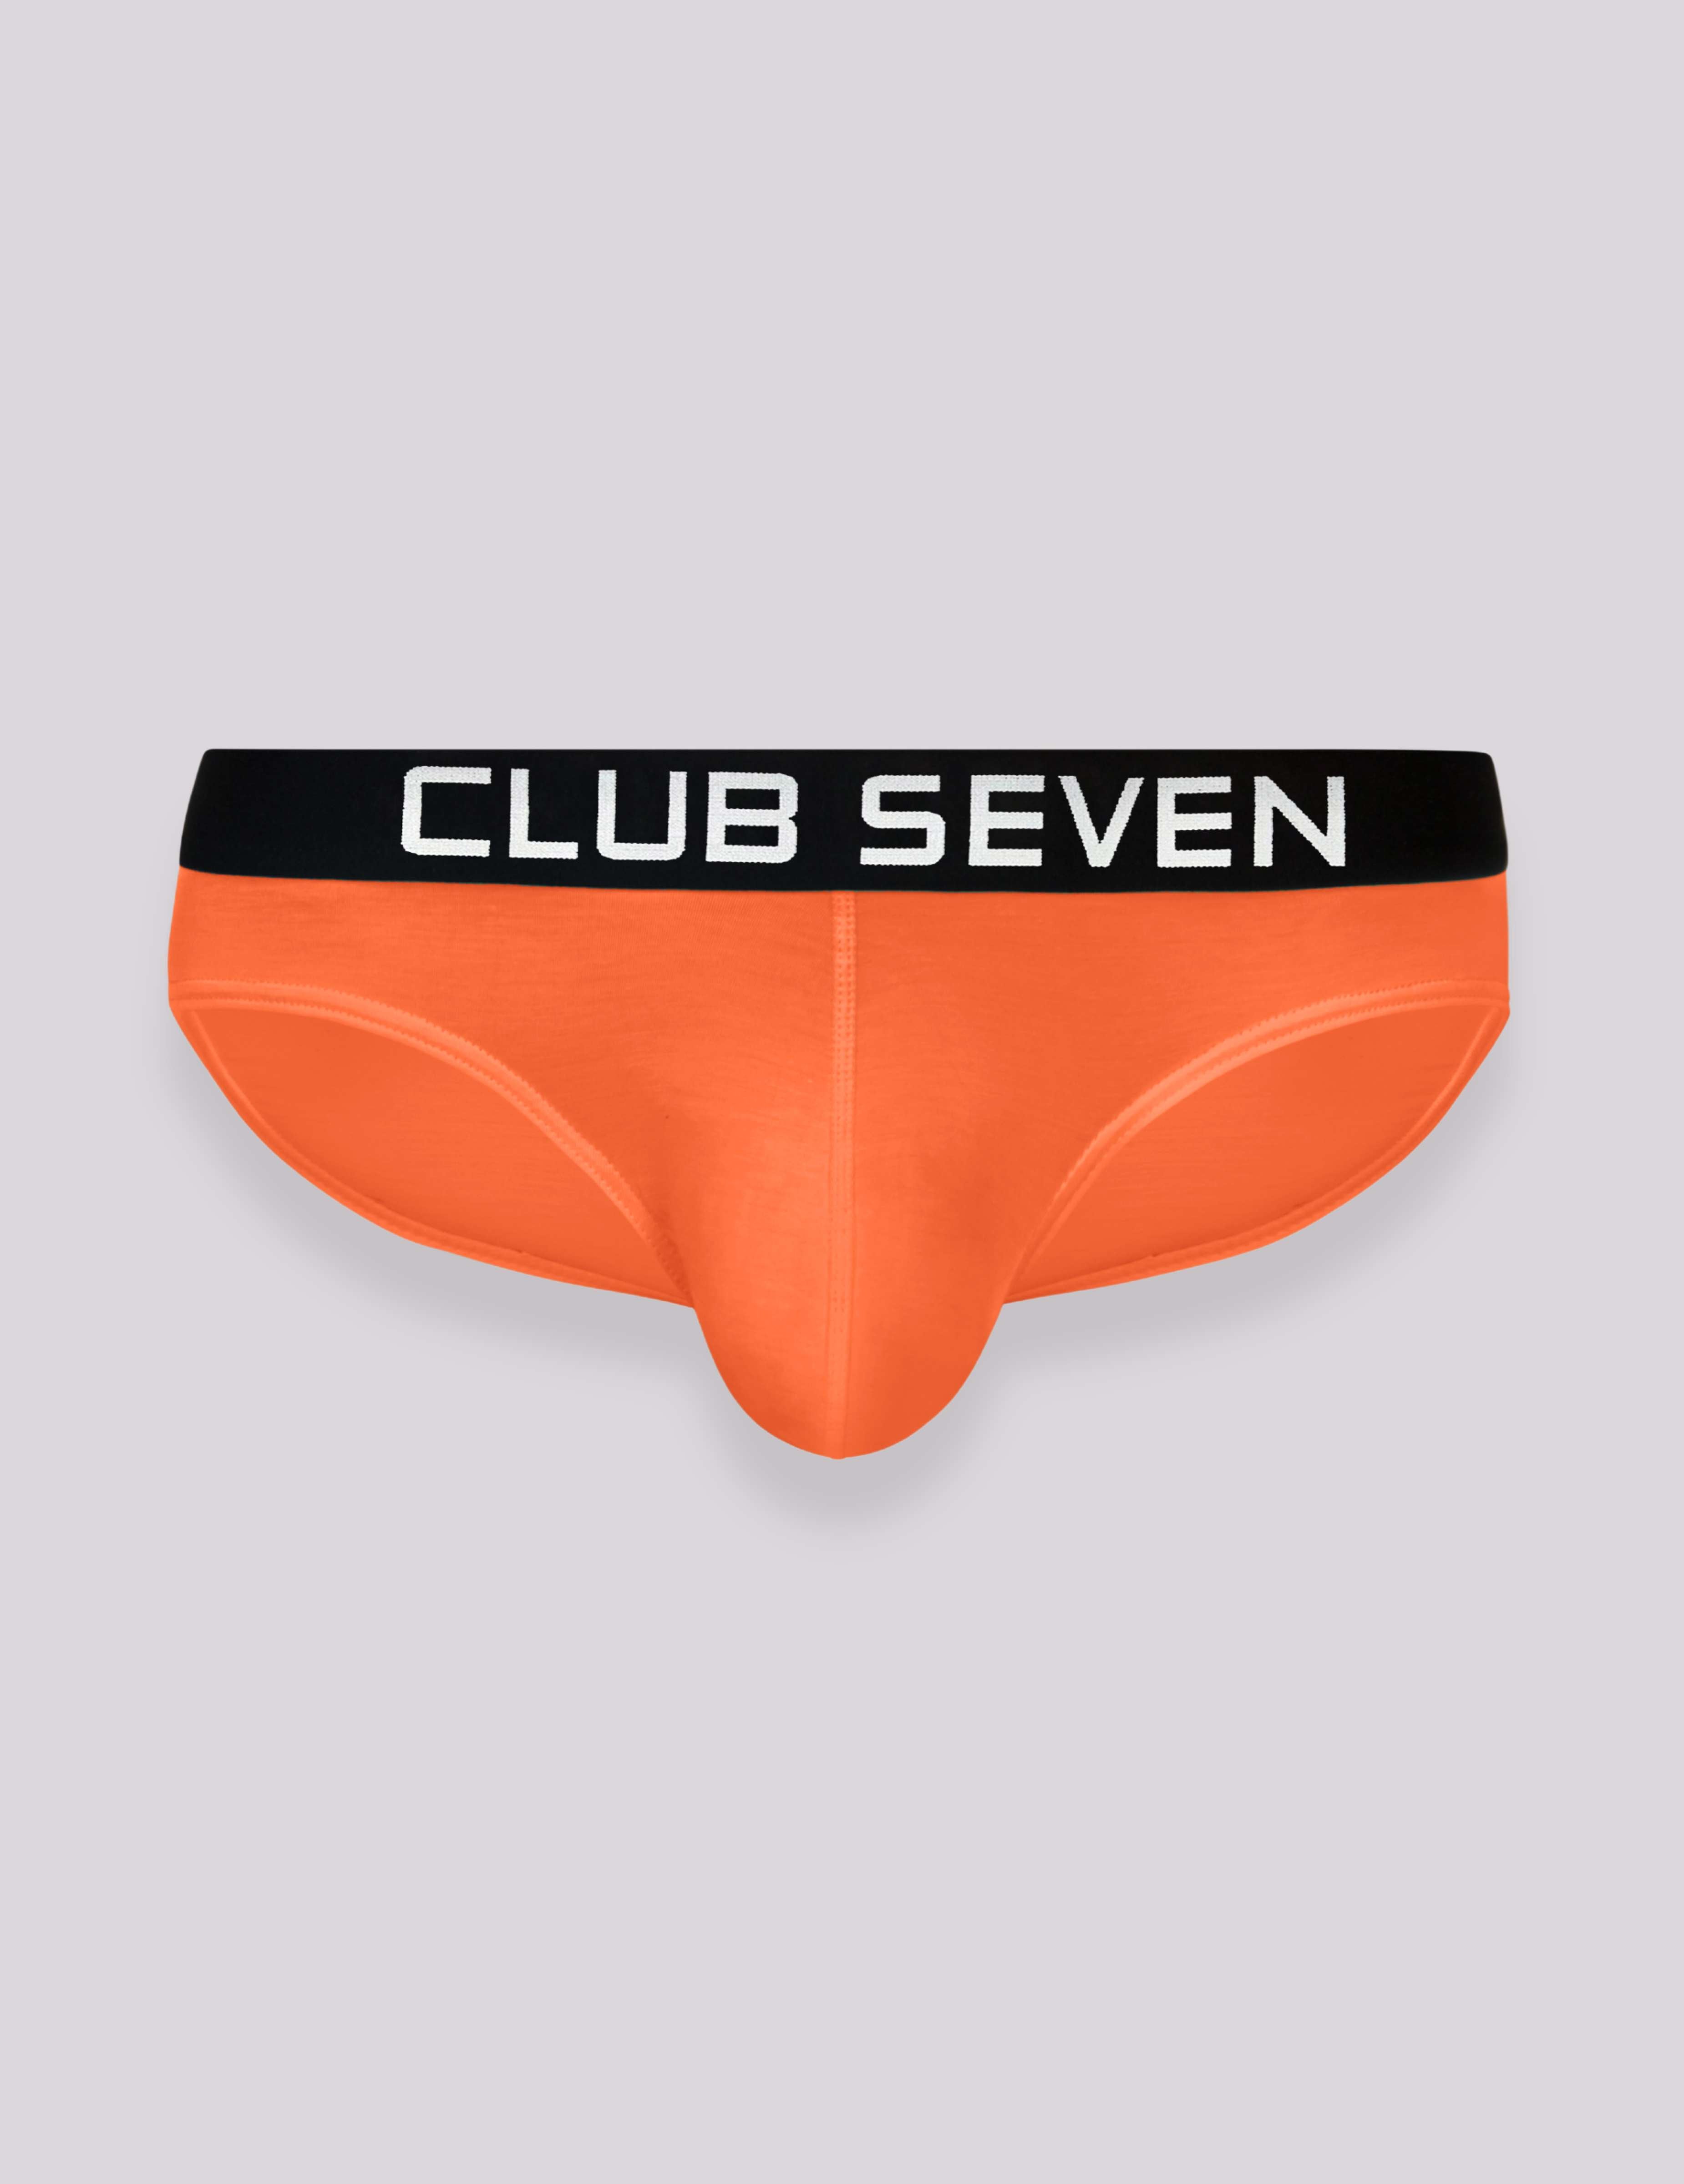 Underwear Repair Club – We repair underwear